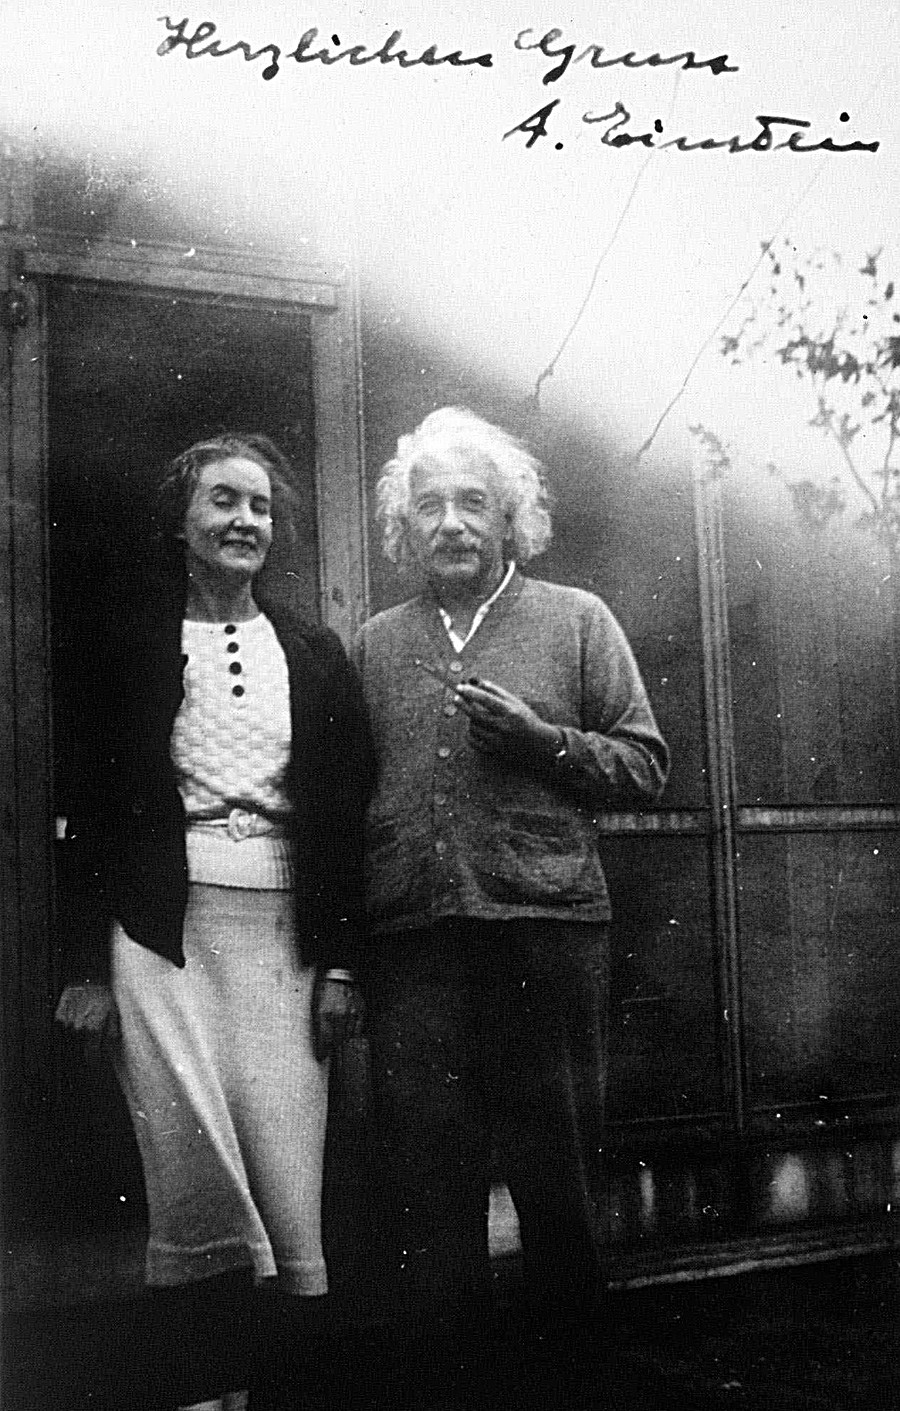 Albert Einstein and Margarita Konenkova are shown together in an undated photo.